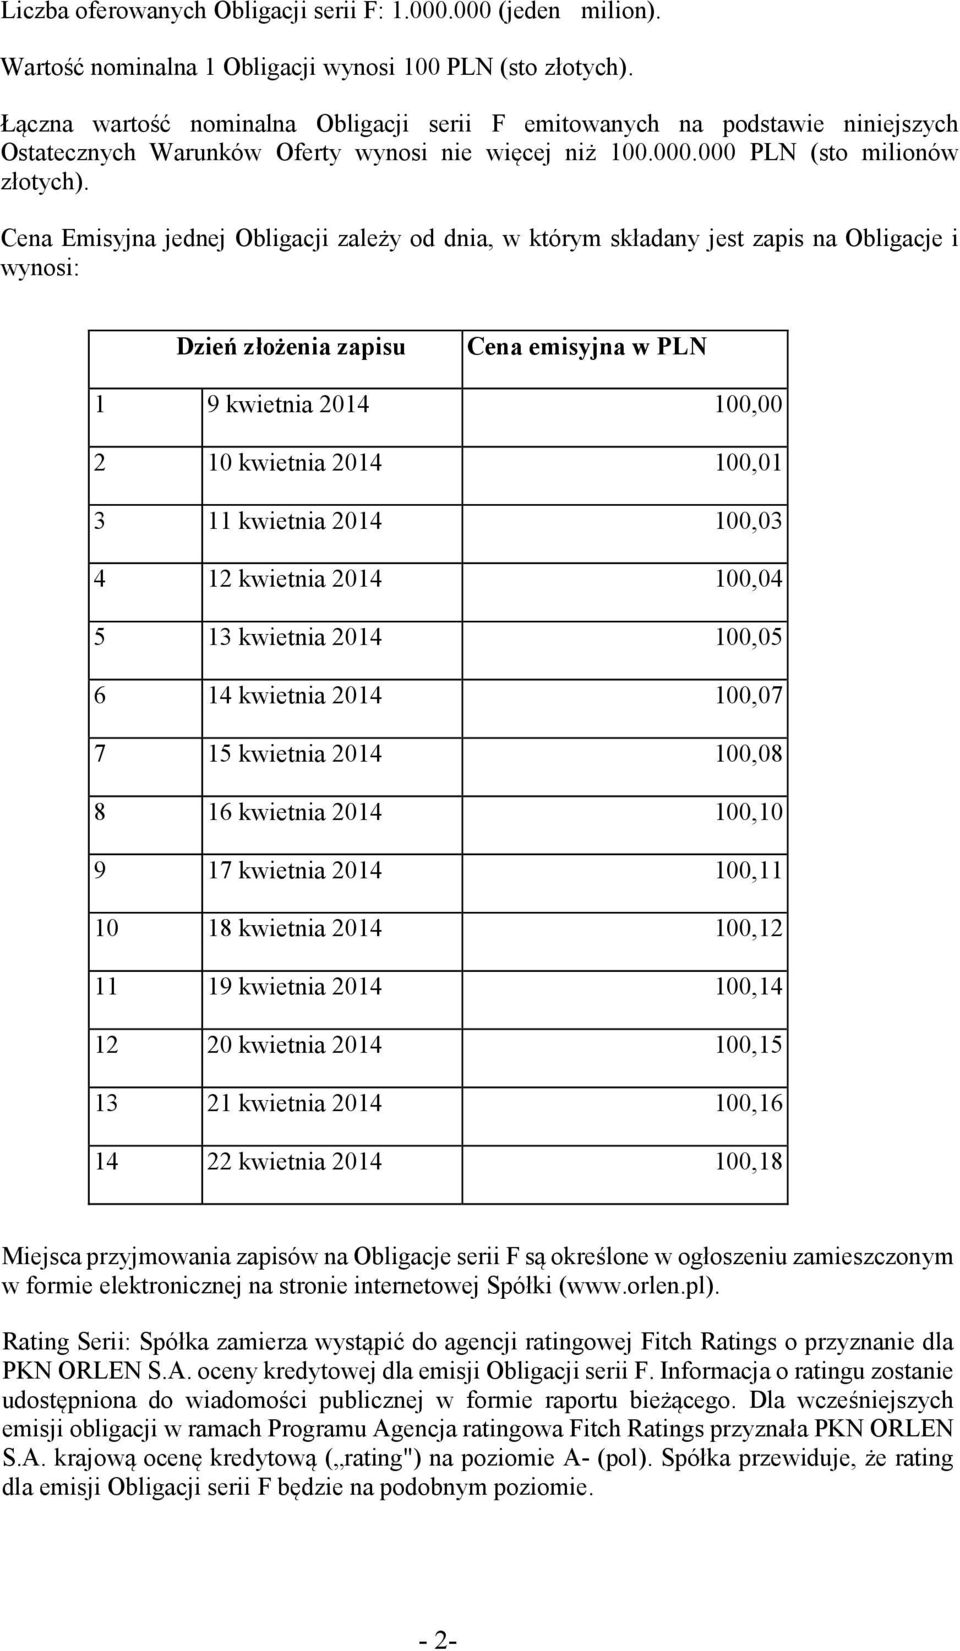 Cena Emisyjna jednej Obligacji zależy od dnia, w którym składany jest zapis na Obligacje i wynosi: Dzień złożenia zapisu Cena emisyjna w PLN 1 9 kwietnia 2014 100,00 2 10 kwietnia 2014 100,01 3 11